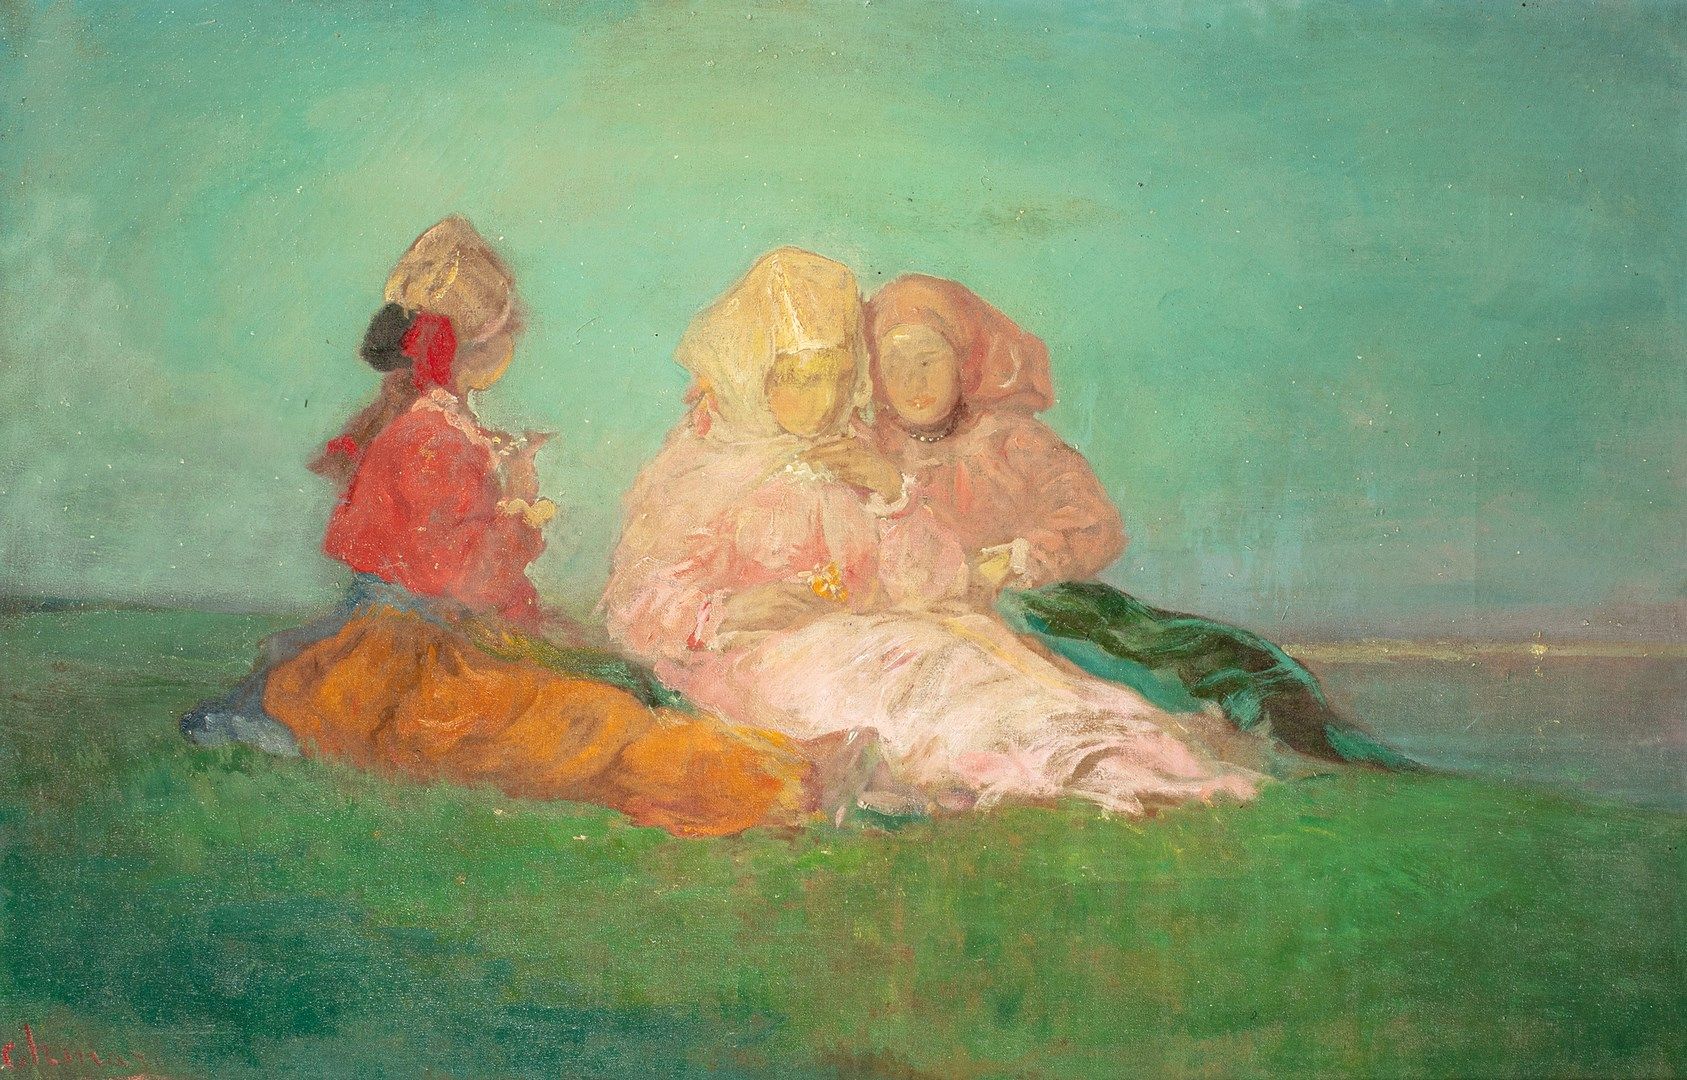 Null 哲马洛夫-保罗, 1874-1950

三个坐在草地上的年轻妇女

布面油画（有裂纹和磨损的痕迹，小幅修复），左下角有部分重装签名

59x91厘米